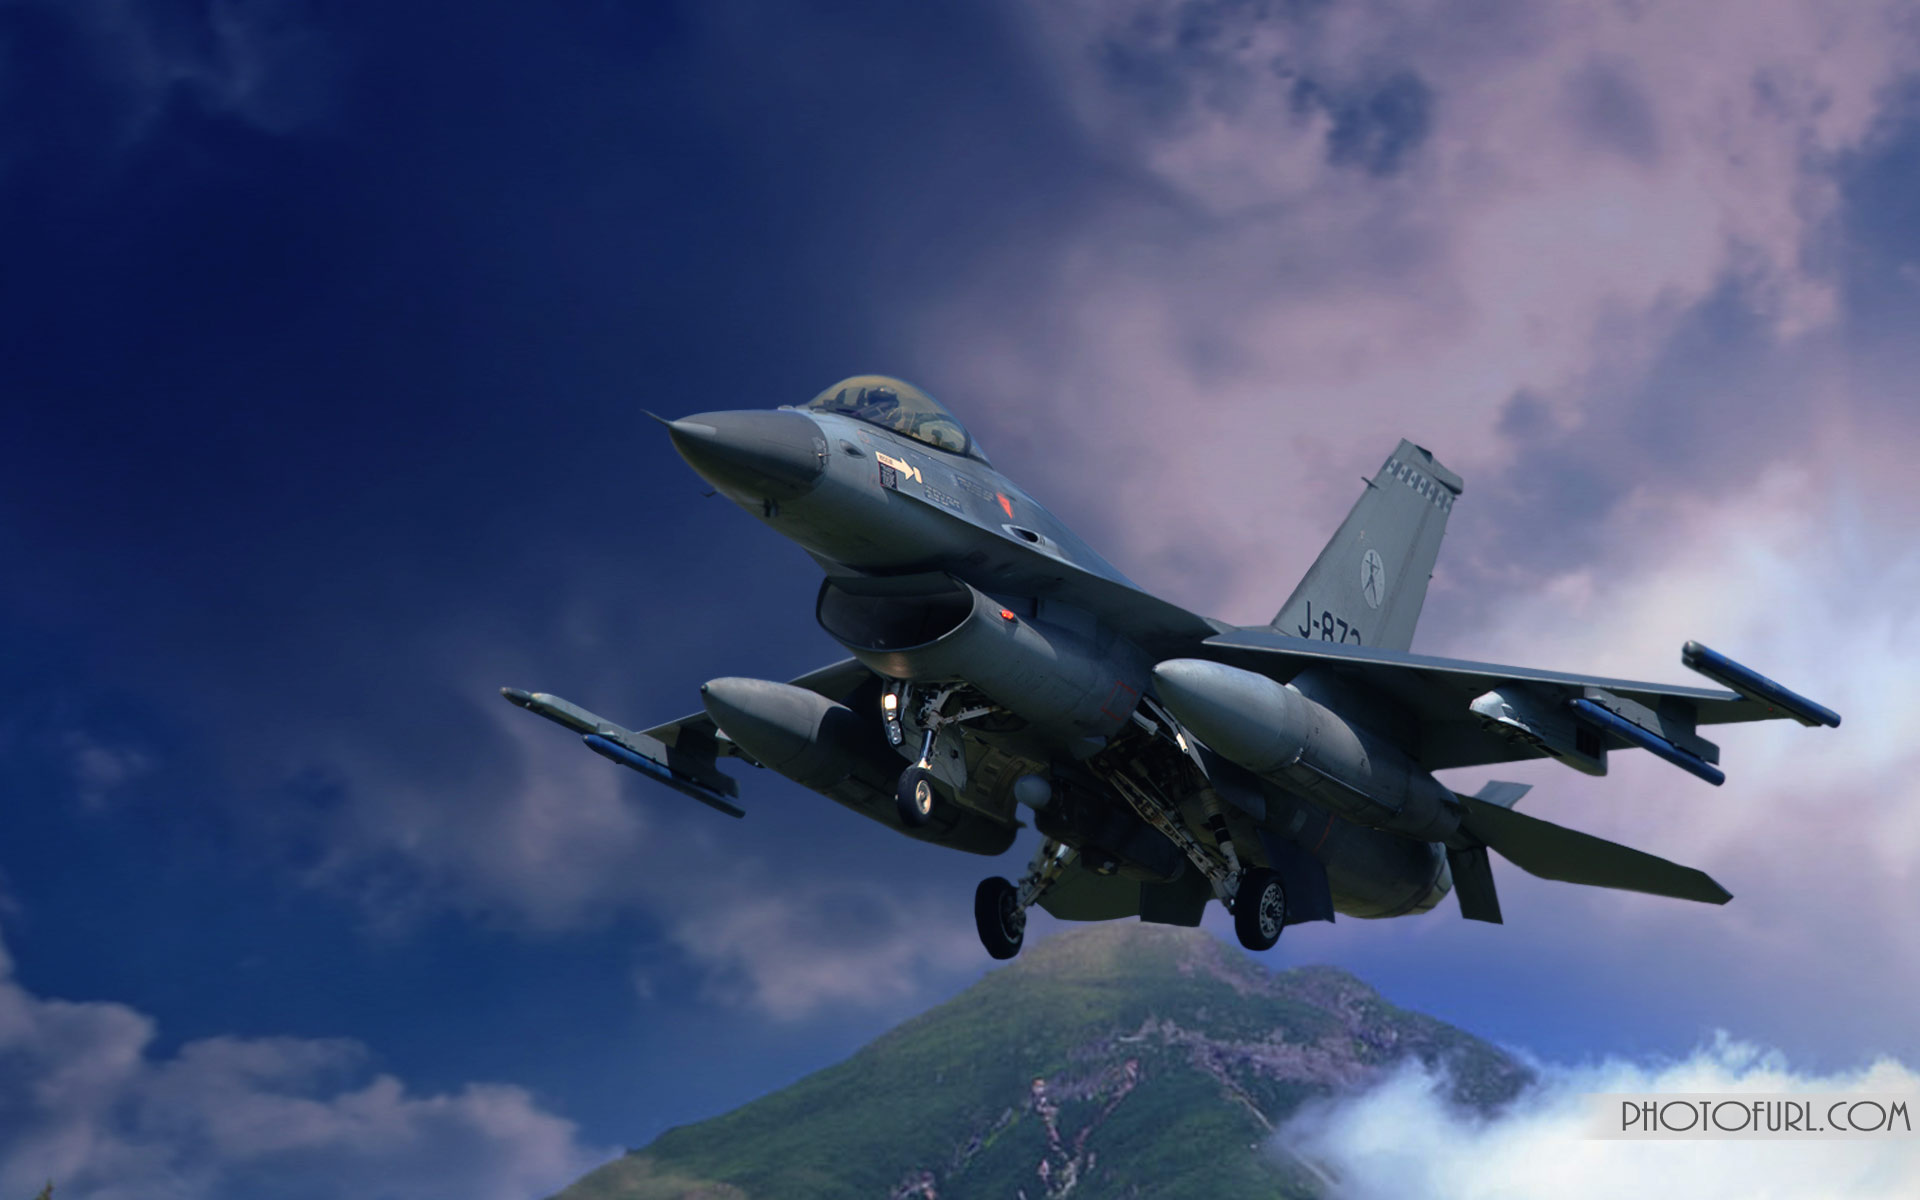 jet wallpaper hd,aeronave,avión,aeronave militar,fuerza aerea,avión de combate